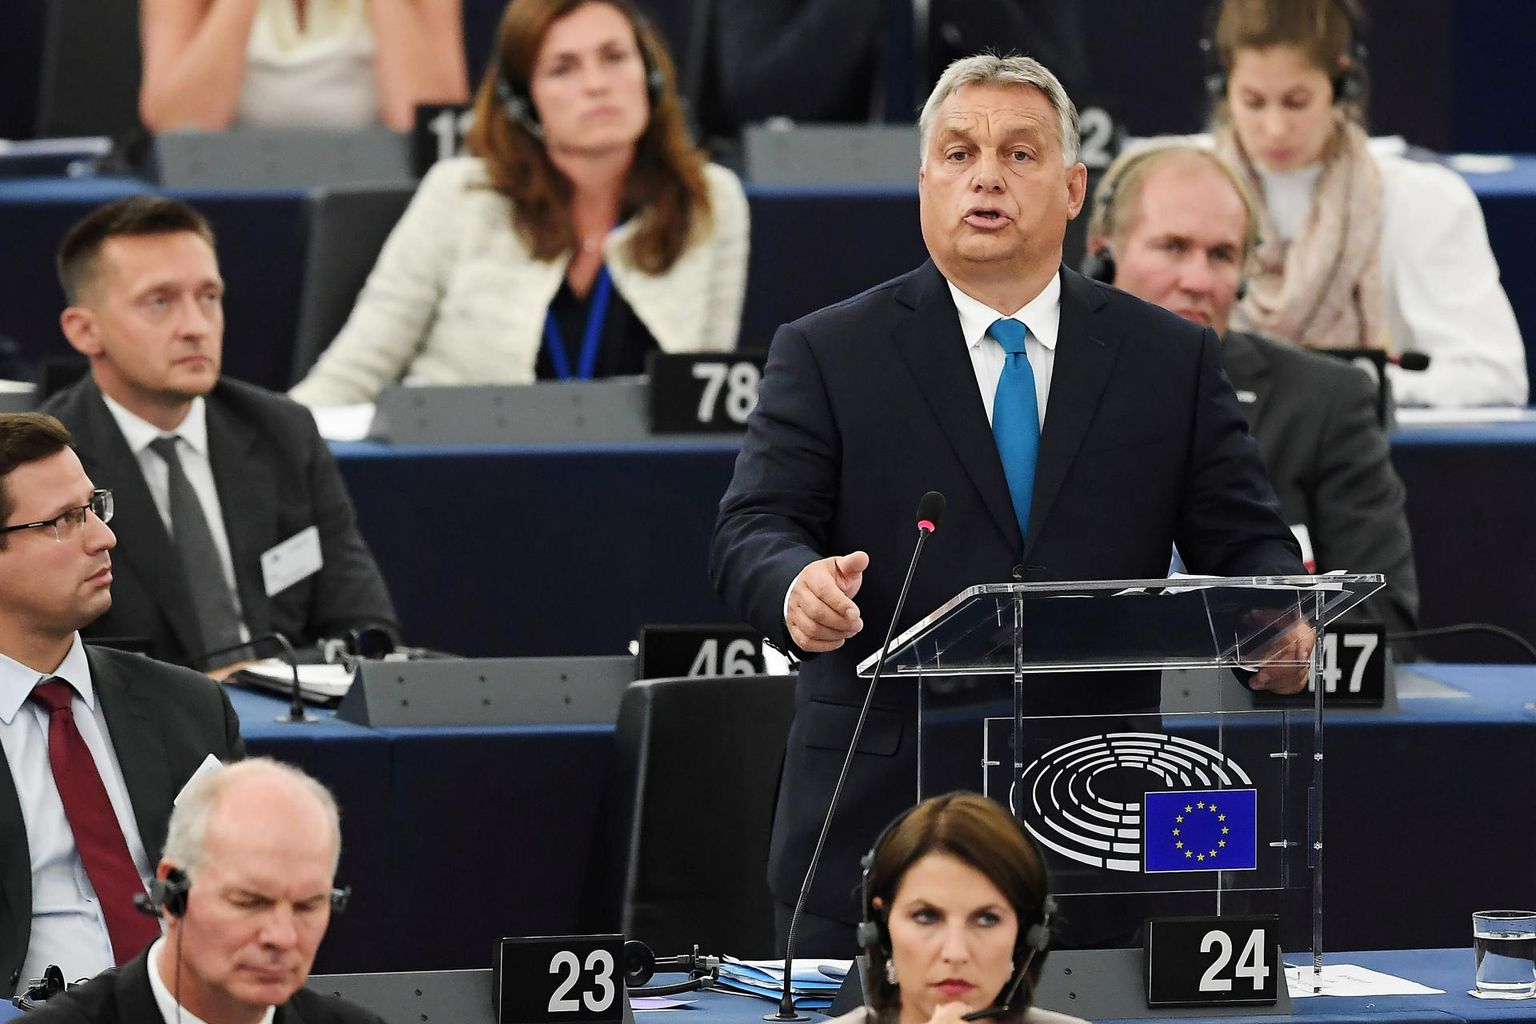 Ungari peaminister Viktor Orbán tõotas seista Euroopa Liidu nõude vastu leevendada oma migratsioonivastast positsiooni ning nimetas survet väljapressimiseks.